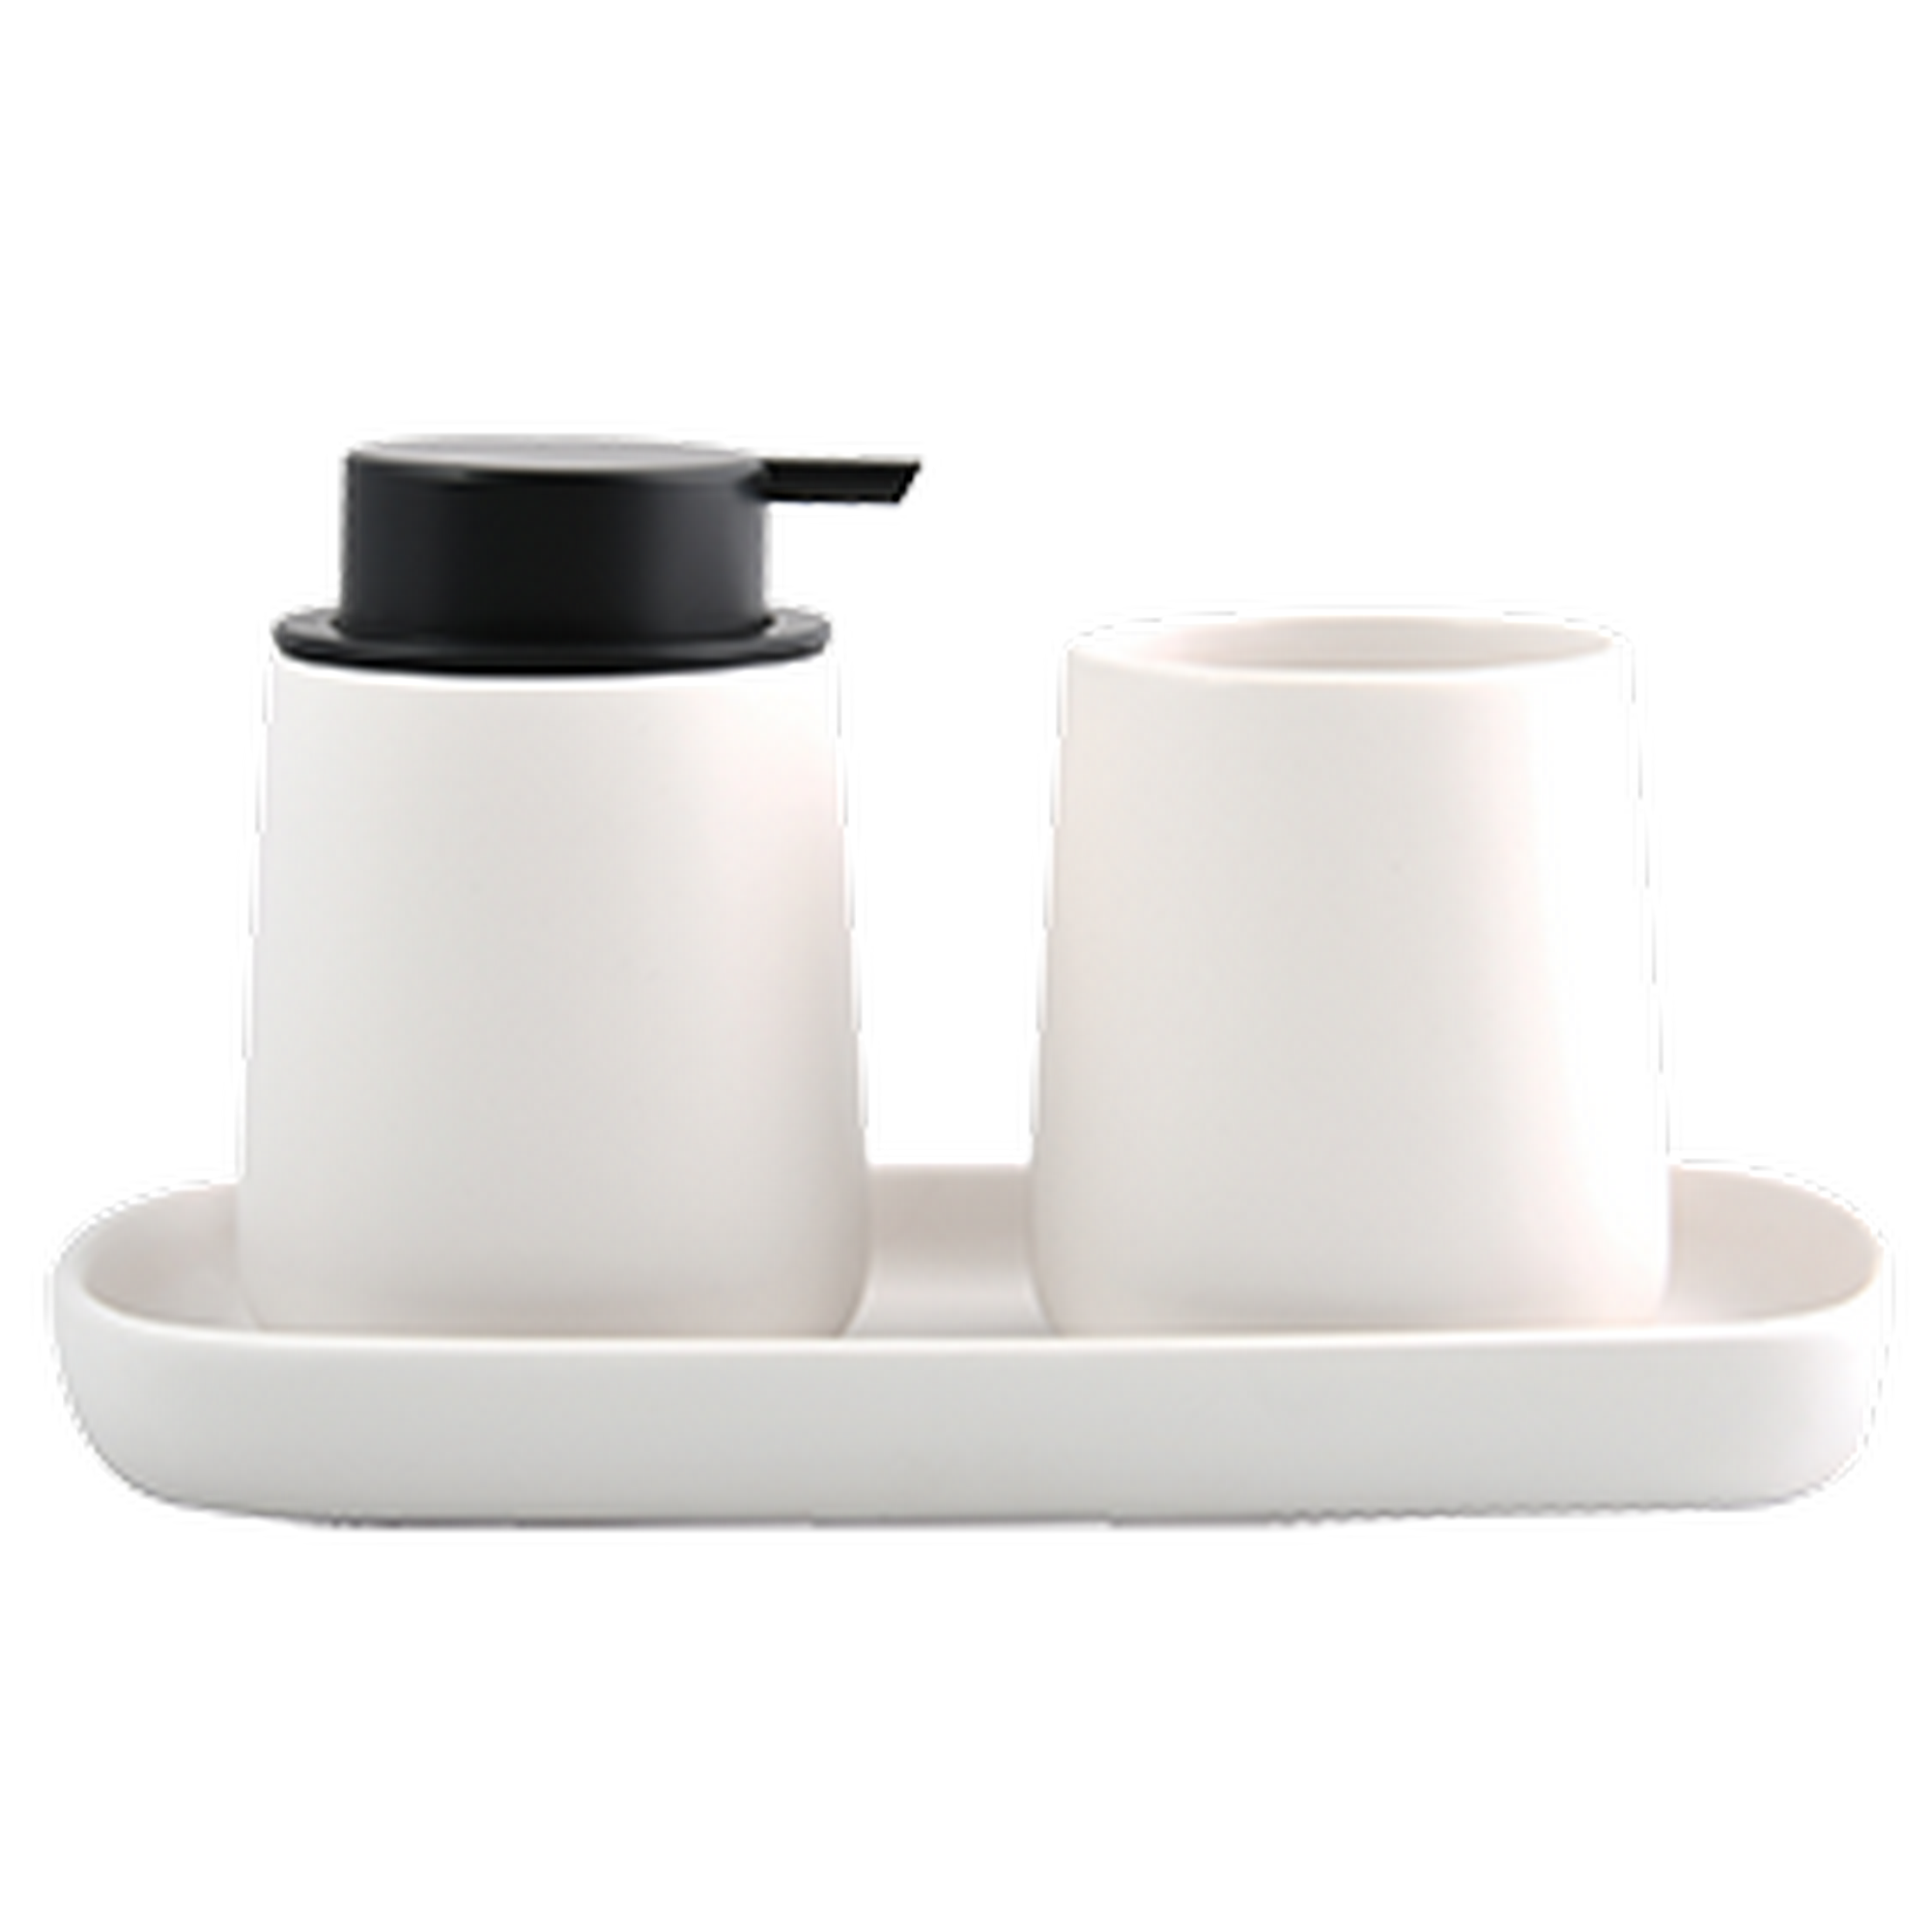 Ablageschale 'Maonie' Keramik weiß 25,7 x 11,5 x 2,8 cm + product picture